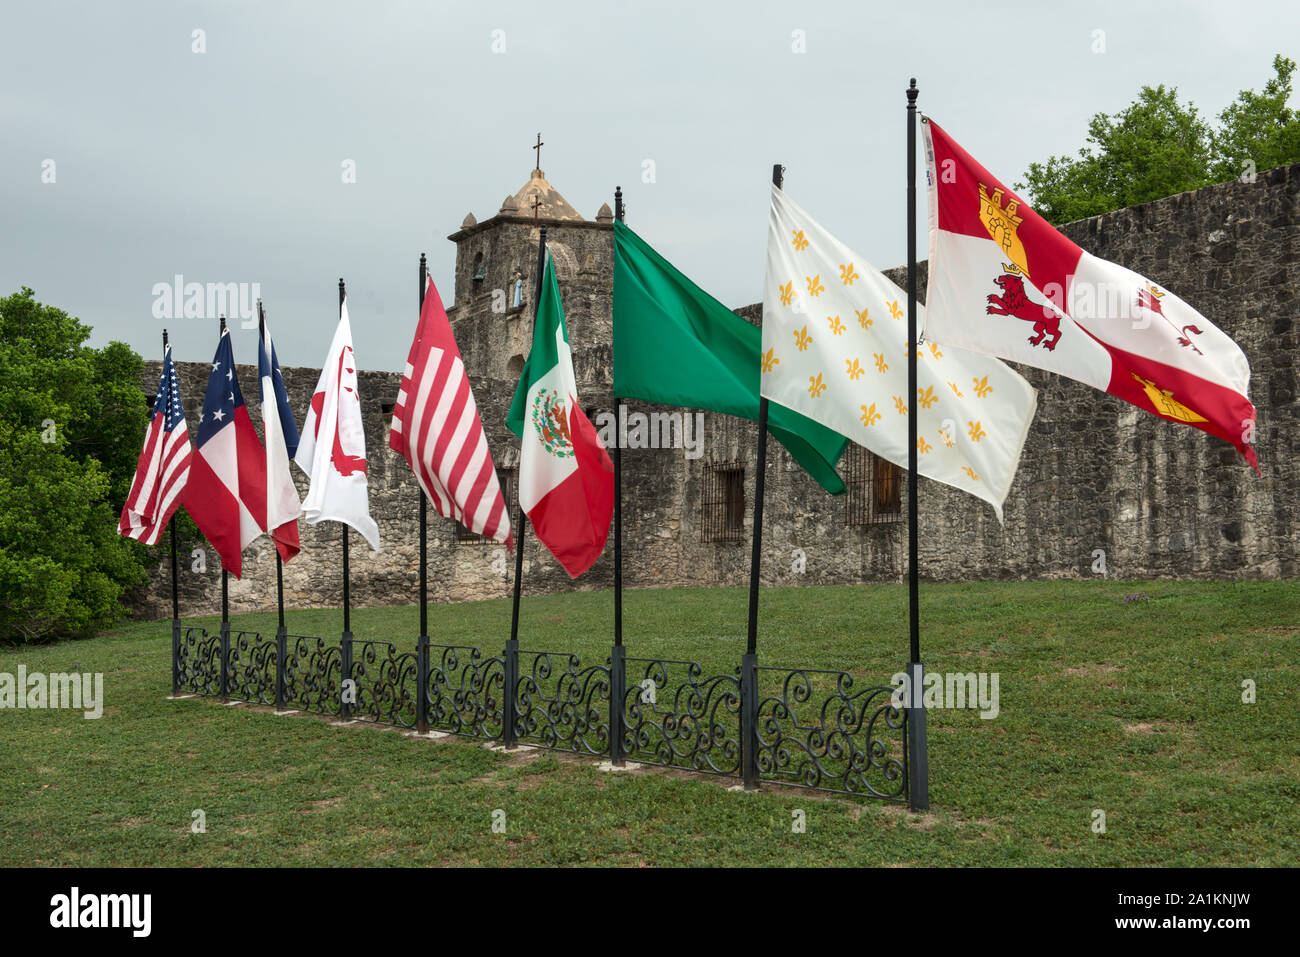 Neuf, je vois des drapeaux à l'extérieur du Presidio de la Bahia de Goliad, Texas. Ils représentent les drapeaux des six entités qui ont gouverné le Texas territoire (Espagne, France, Mexique, République du Texas, États confédérés d'Amérique latine et des États-Unis d'Amérique), plus trois représentant les forces révolutionnaires que brièvement occupé le fort historique Banque D'Images